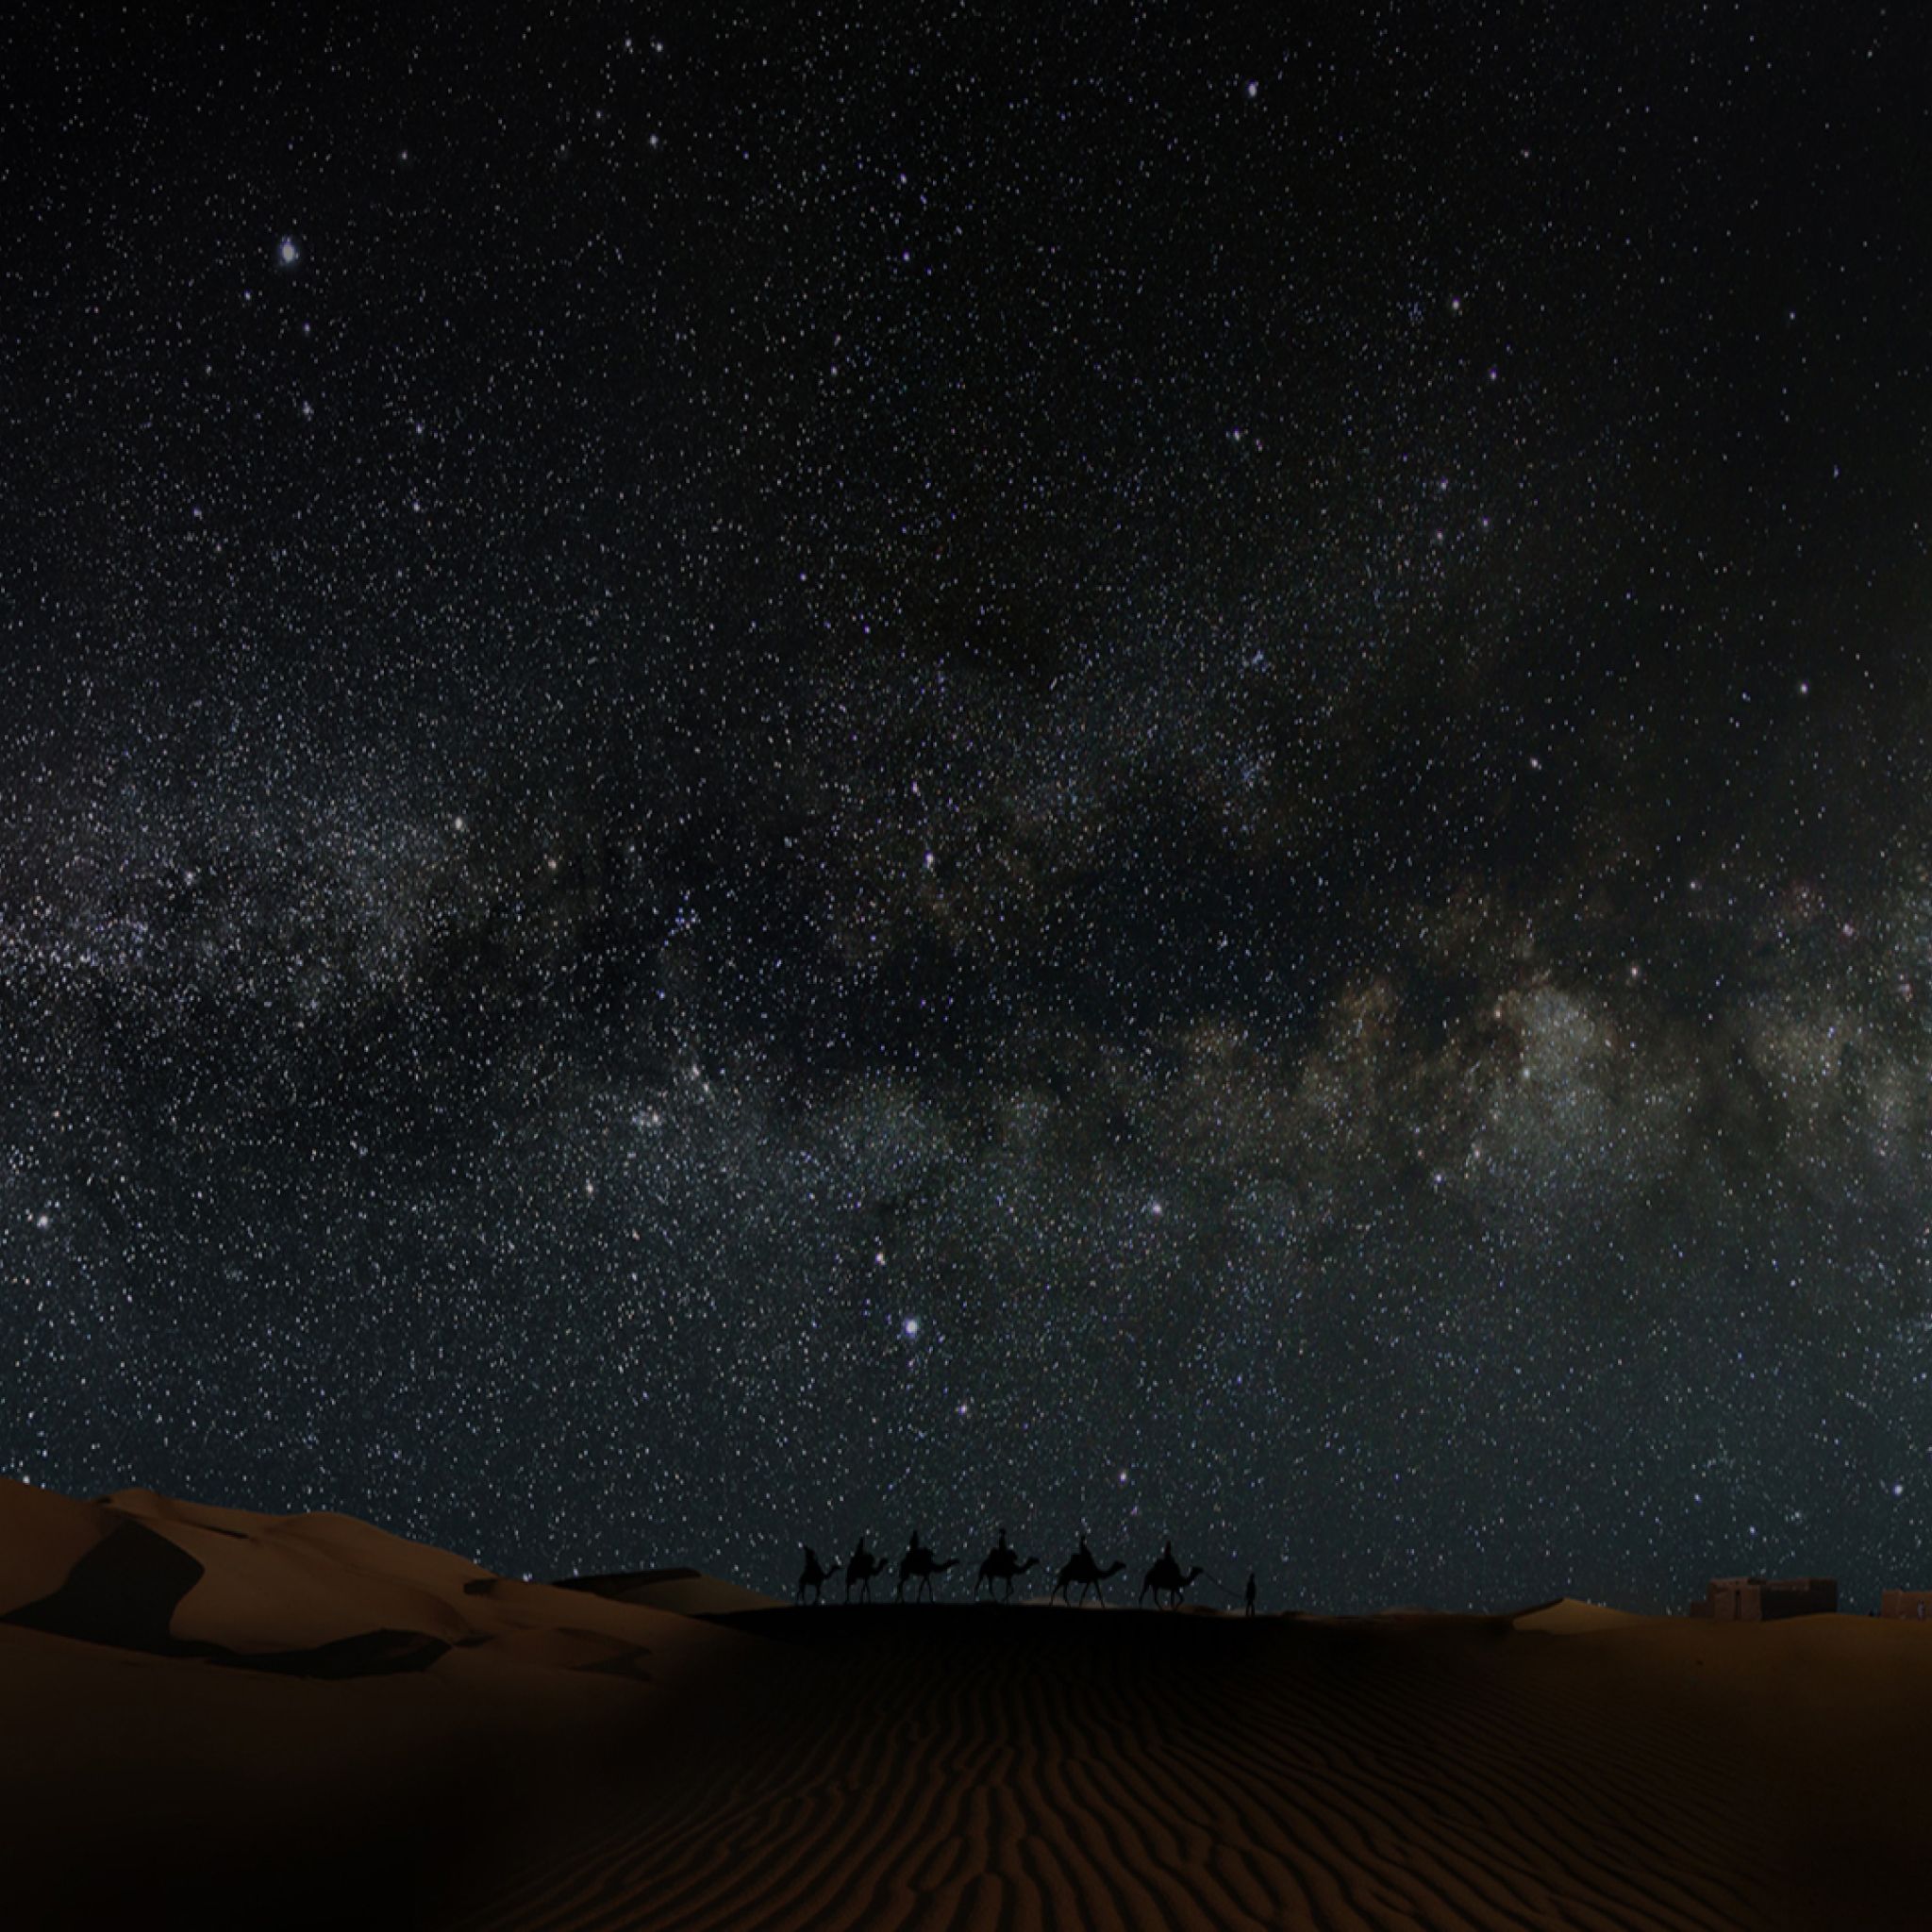 Desert Night Images  Free Download on Freepik